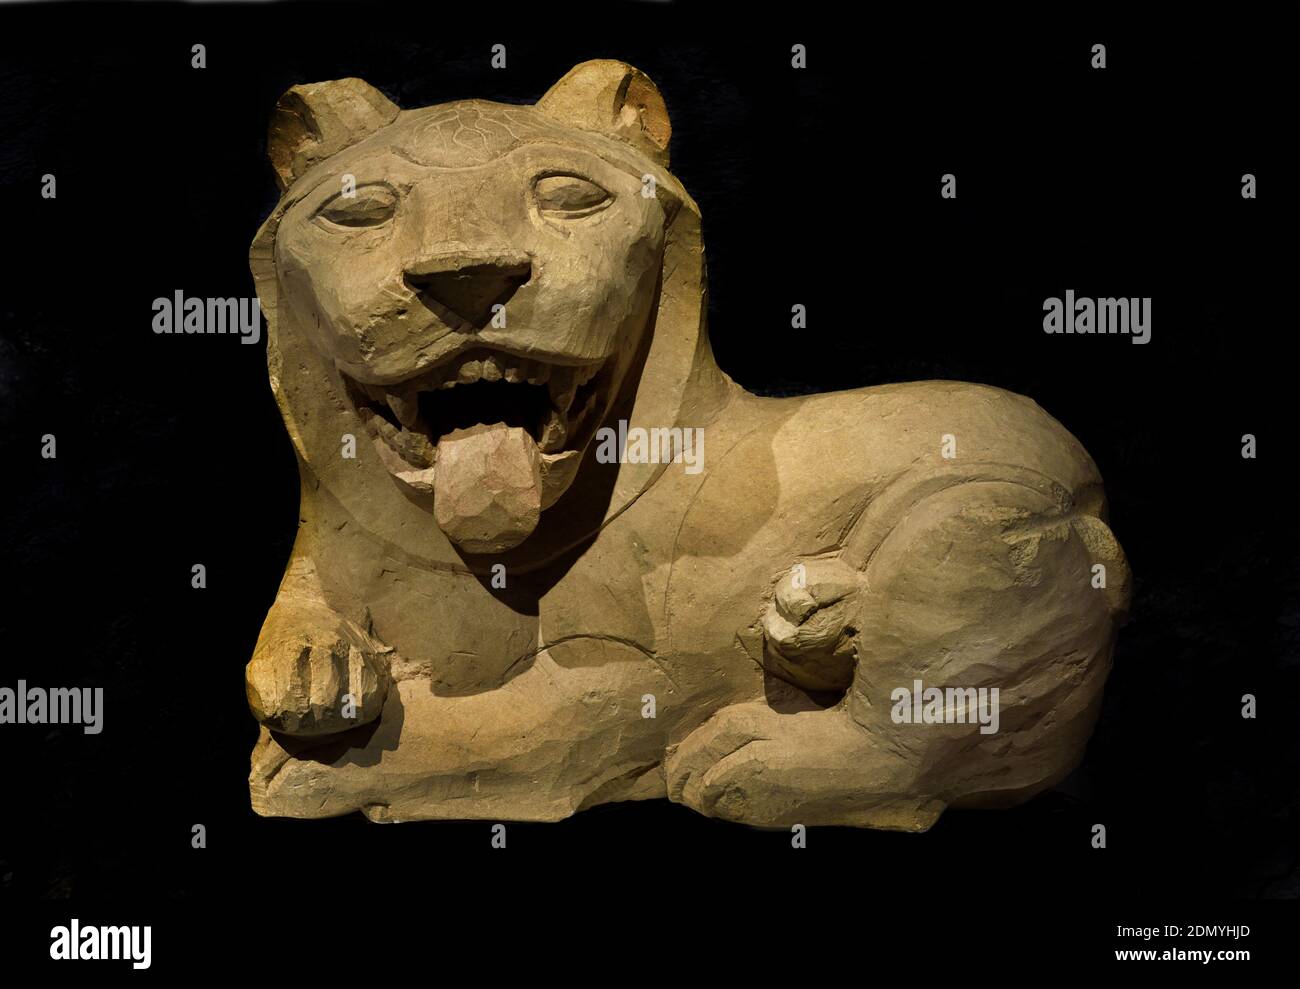 Sphinx et Lion Tamassos 550-500 BC Musée de Chypre, Nicosie grec, Grèce, Chypriotes ( les tombes royales de Tamassos. ) Tamassos - Tamasos - Tamassus - Tamasus était une ville-royaume de Chypre. Banque D'Images